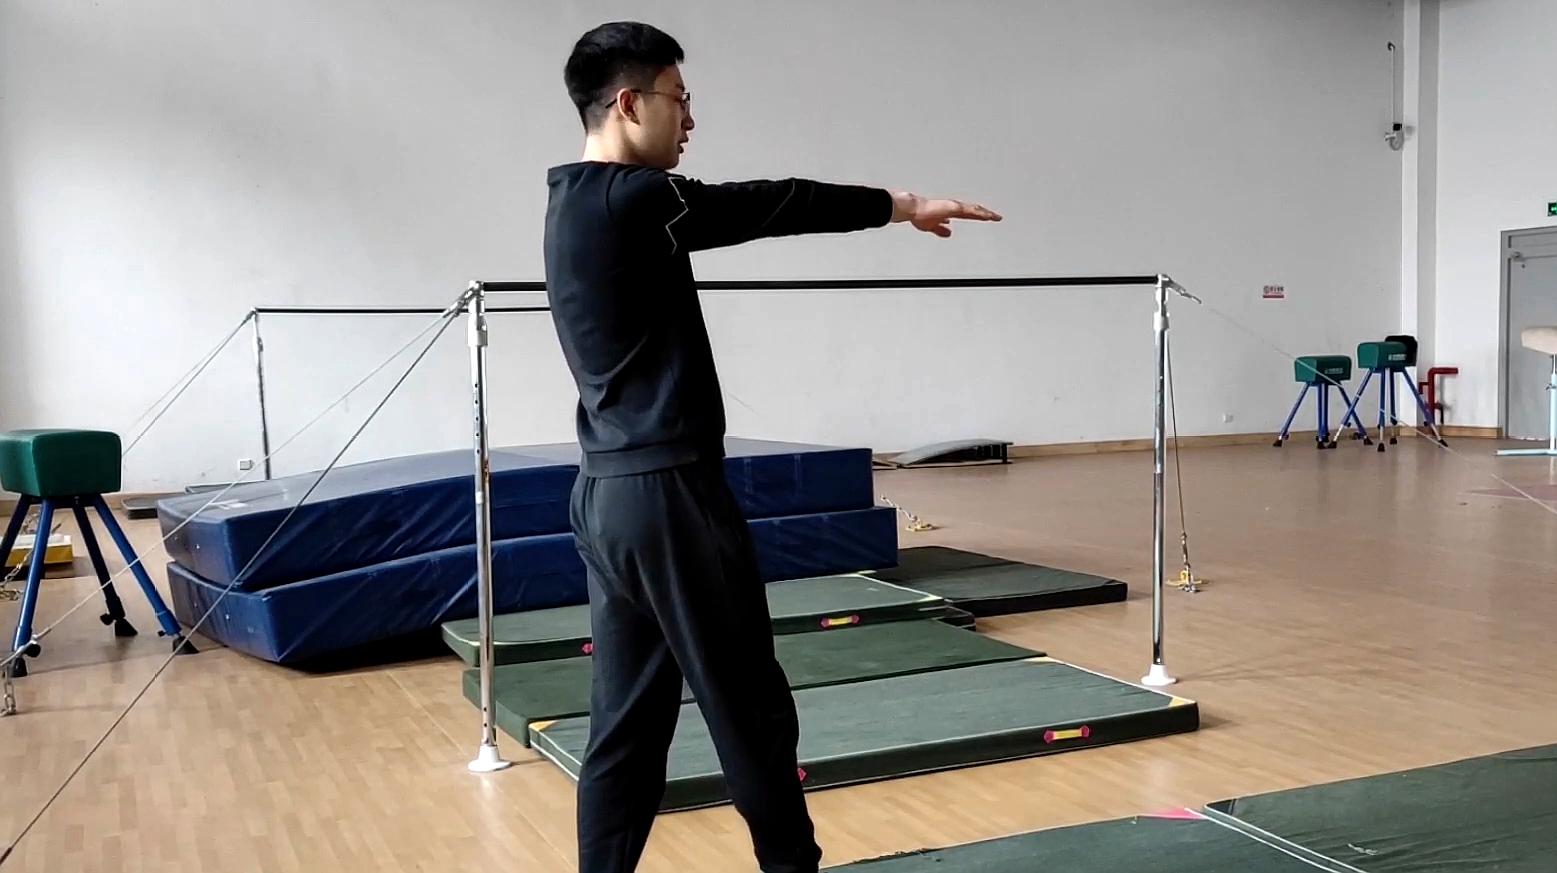 侧手翻教学视频:如何练习体操动作中的侧手翻?这个教程很详细